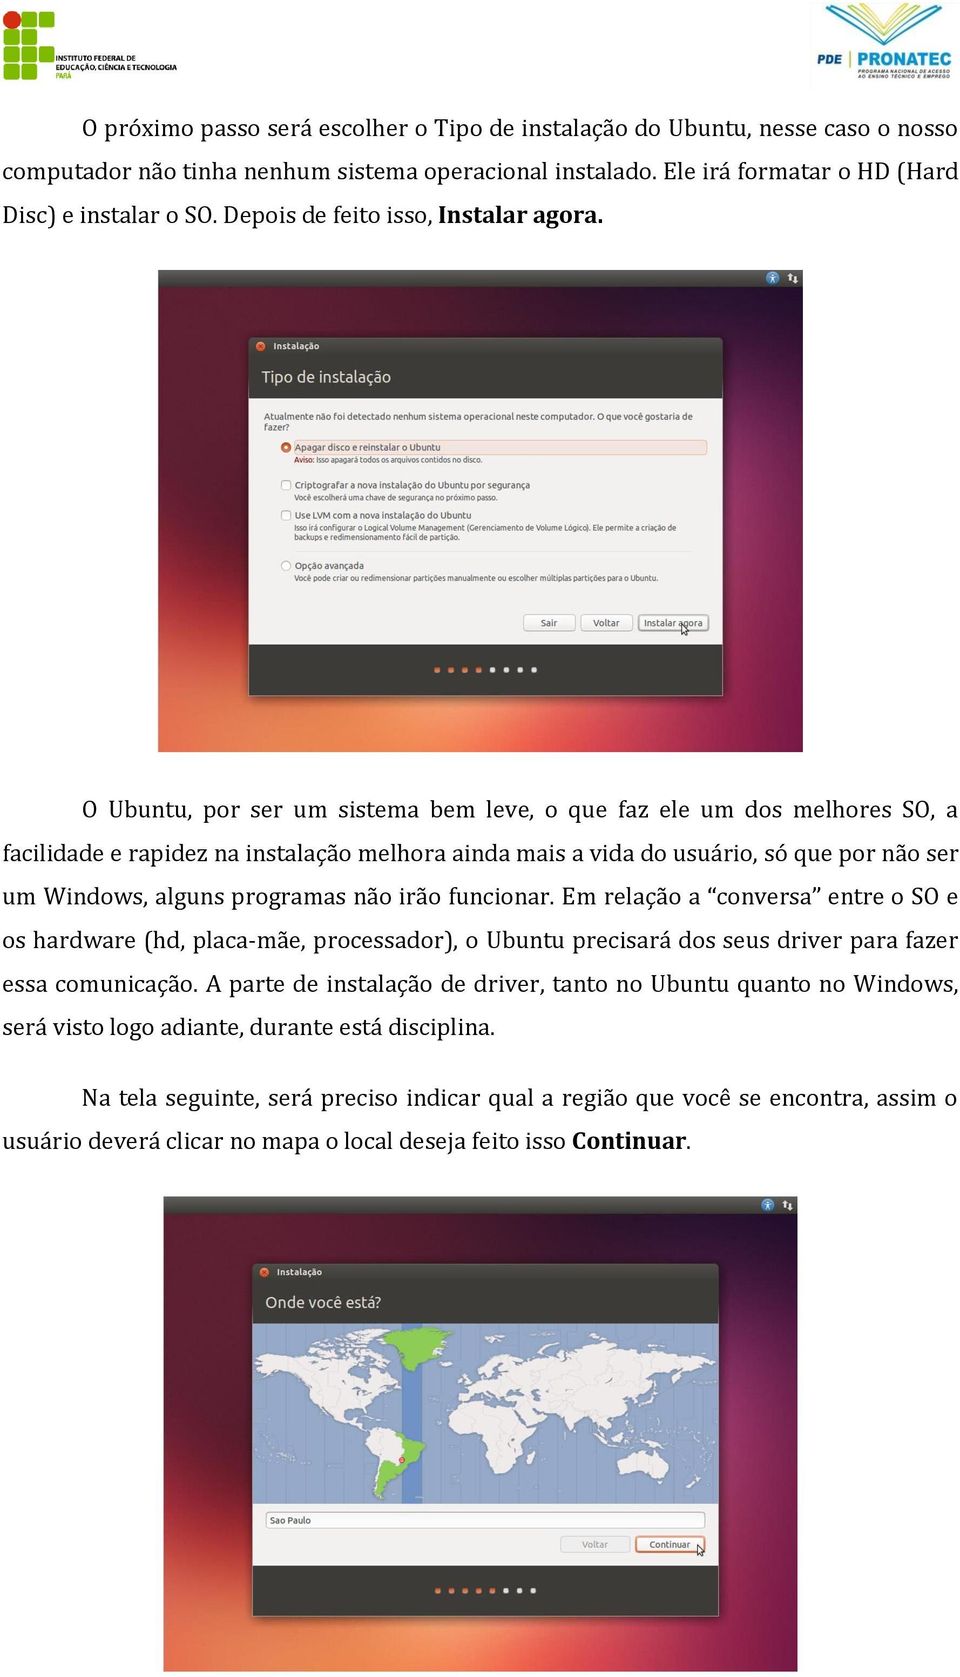 O Ubuntu, por ser um sistema bem leve, o que faz ele um dos melhores SO, a facilidade e rapidez na instalação melhora ainda mais a vida do usuário, só que por não ser um Windows, alguns programas não